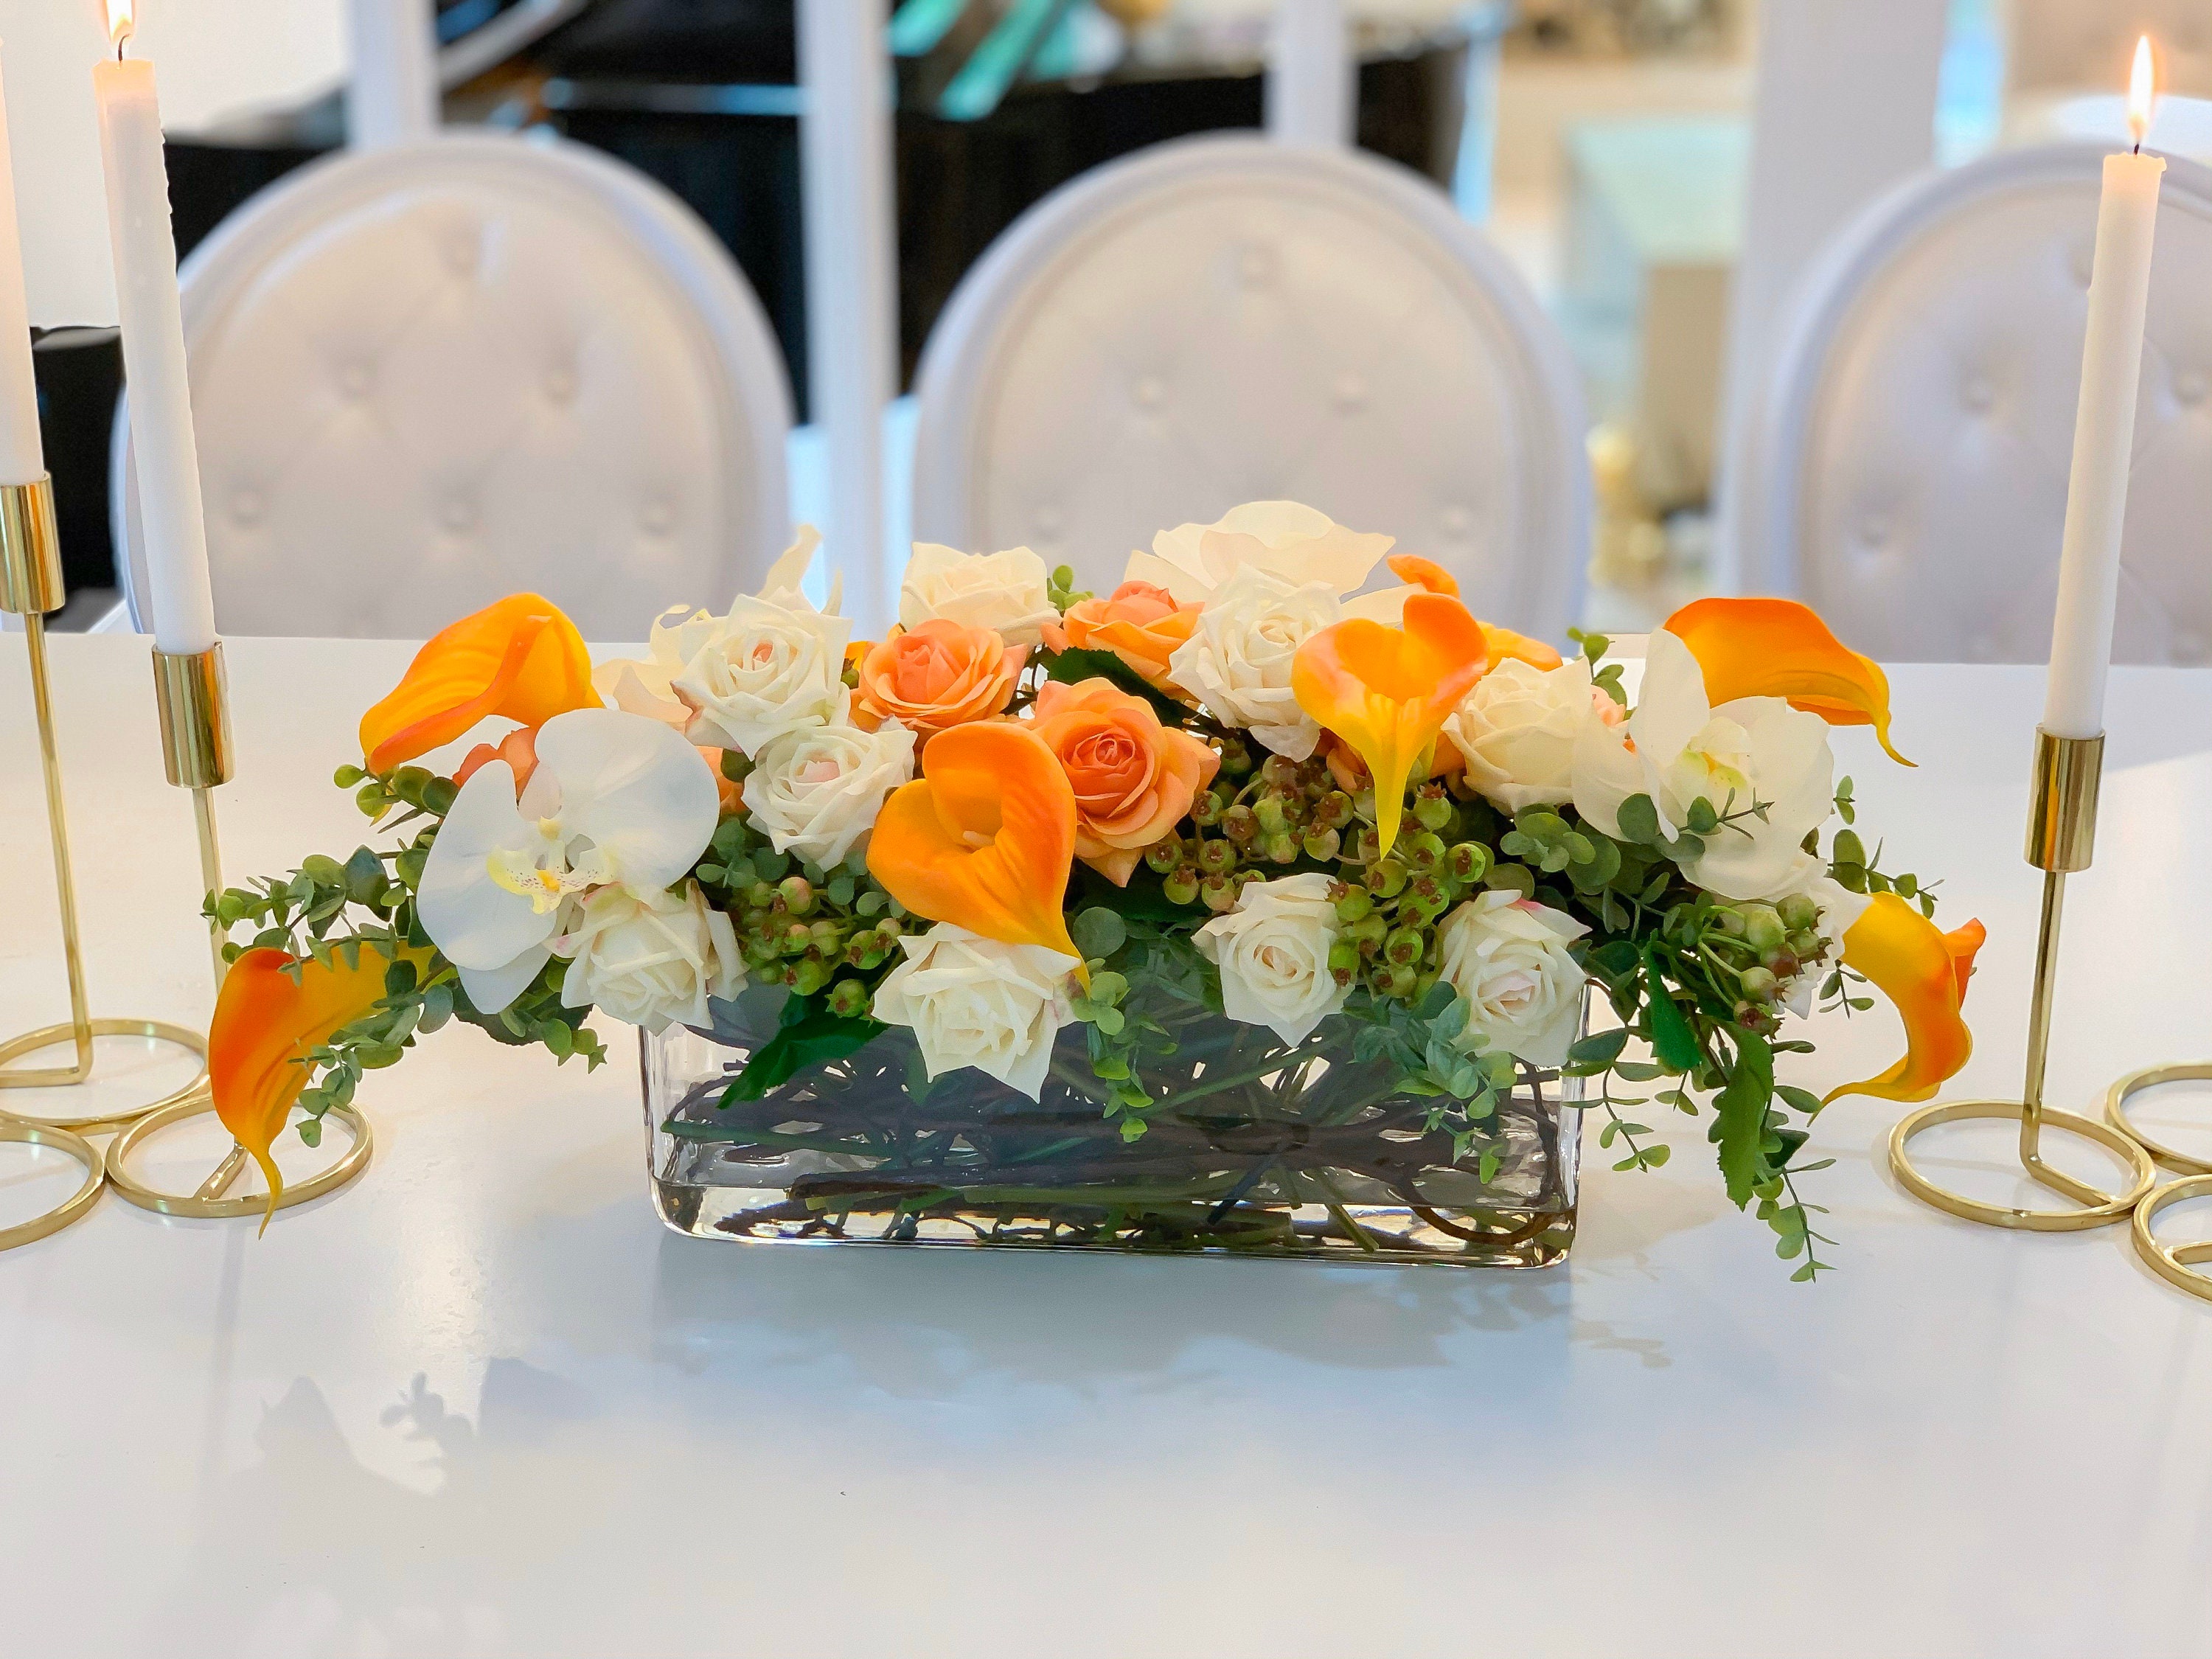 Moderno centro de mesa largo para la mesa de la cena de Acción de Gracias,  arreglo floral hecho a mano, gran arreglo de orquídeas Calla Lily Rose -   España